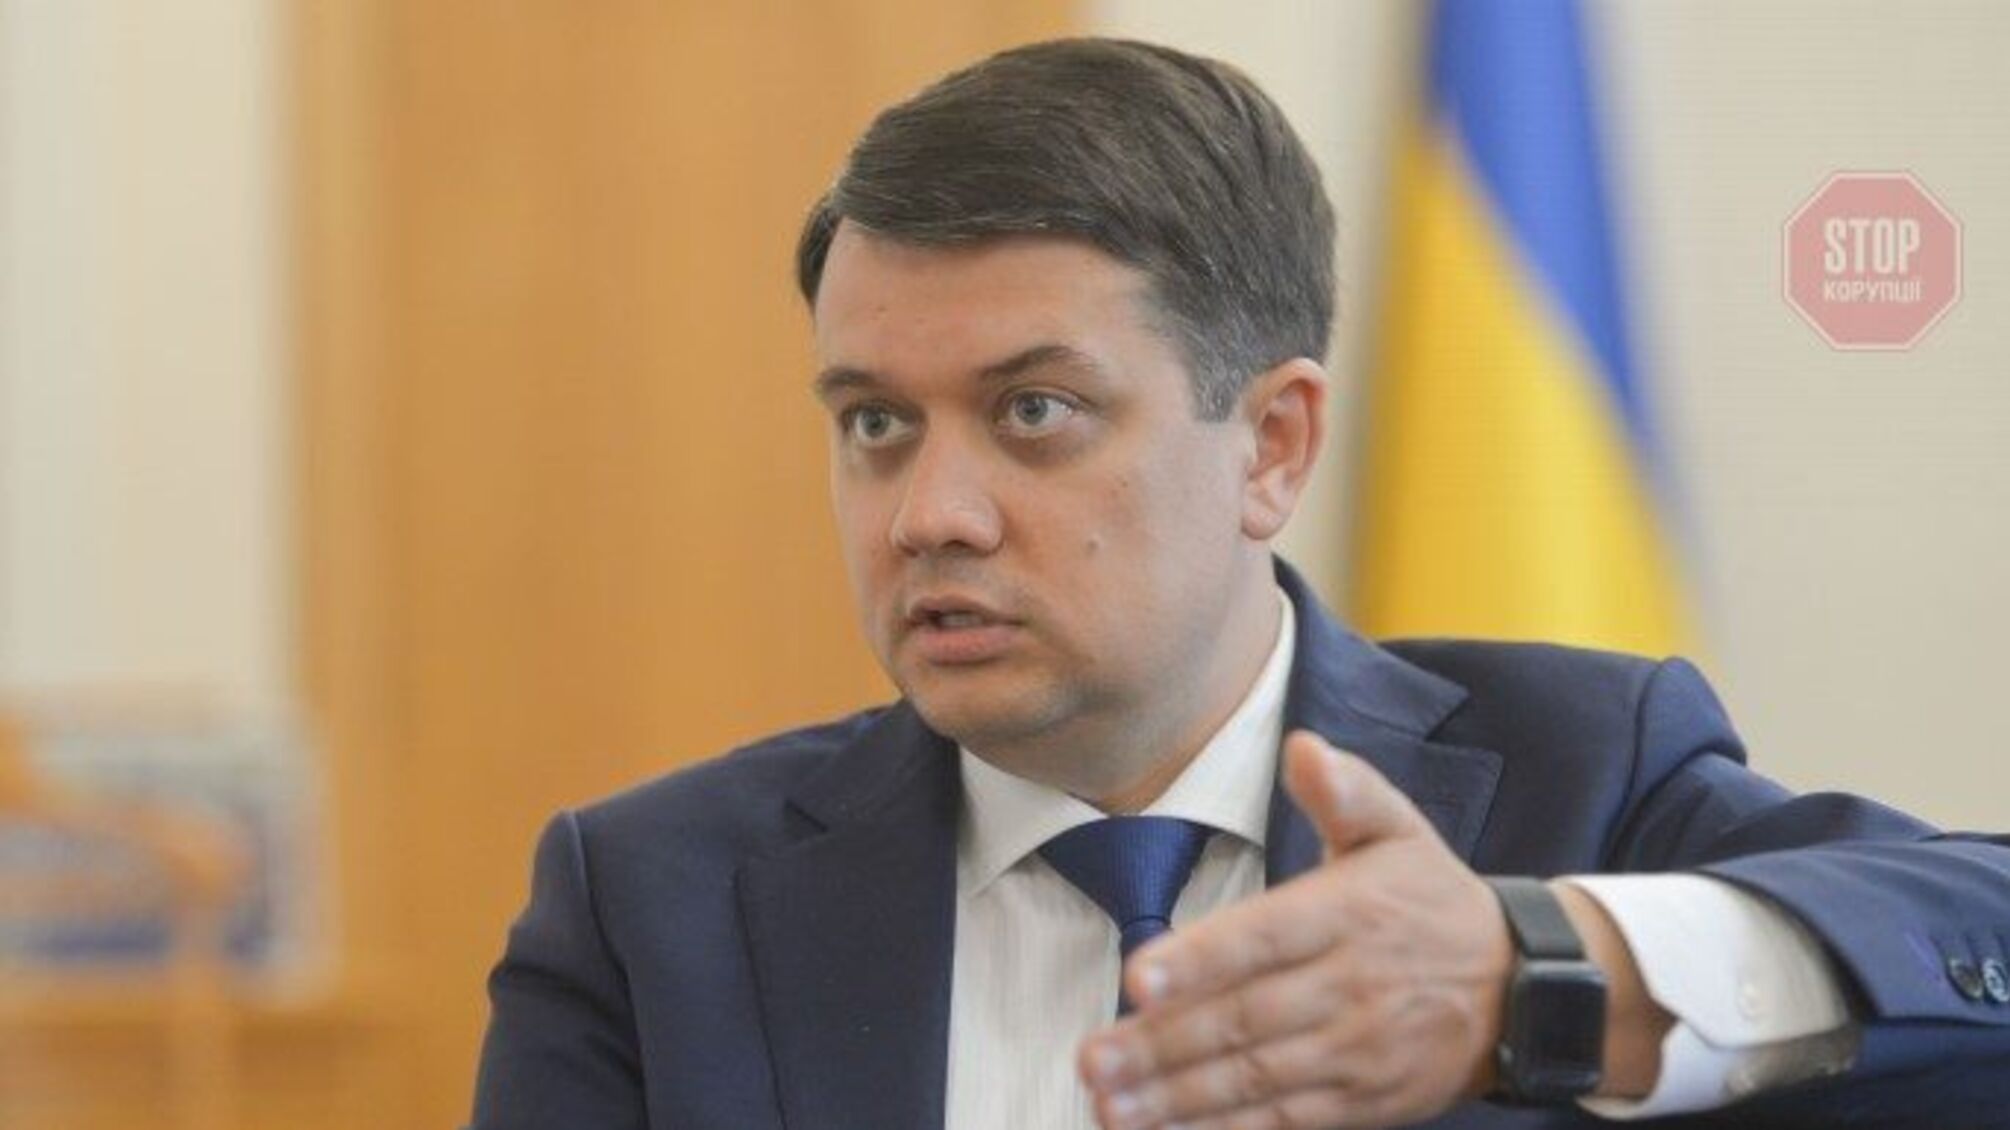 Рішення про позбавлення Разумкова мандату розглянуть на з'їзді партії, — Корнієнко